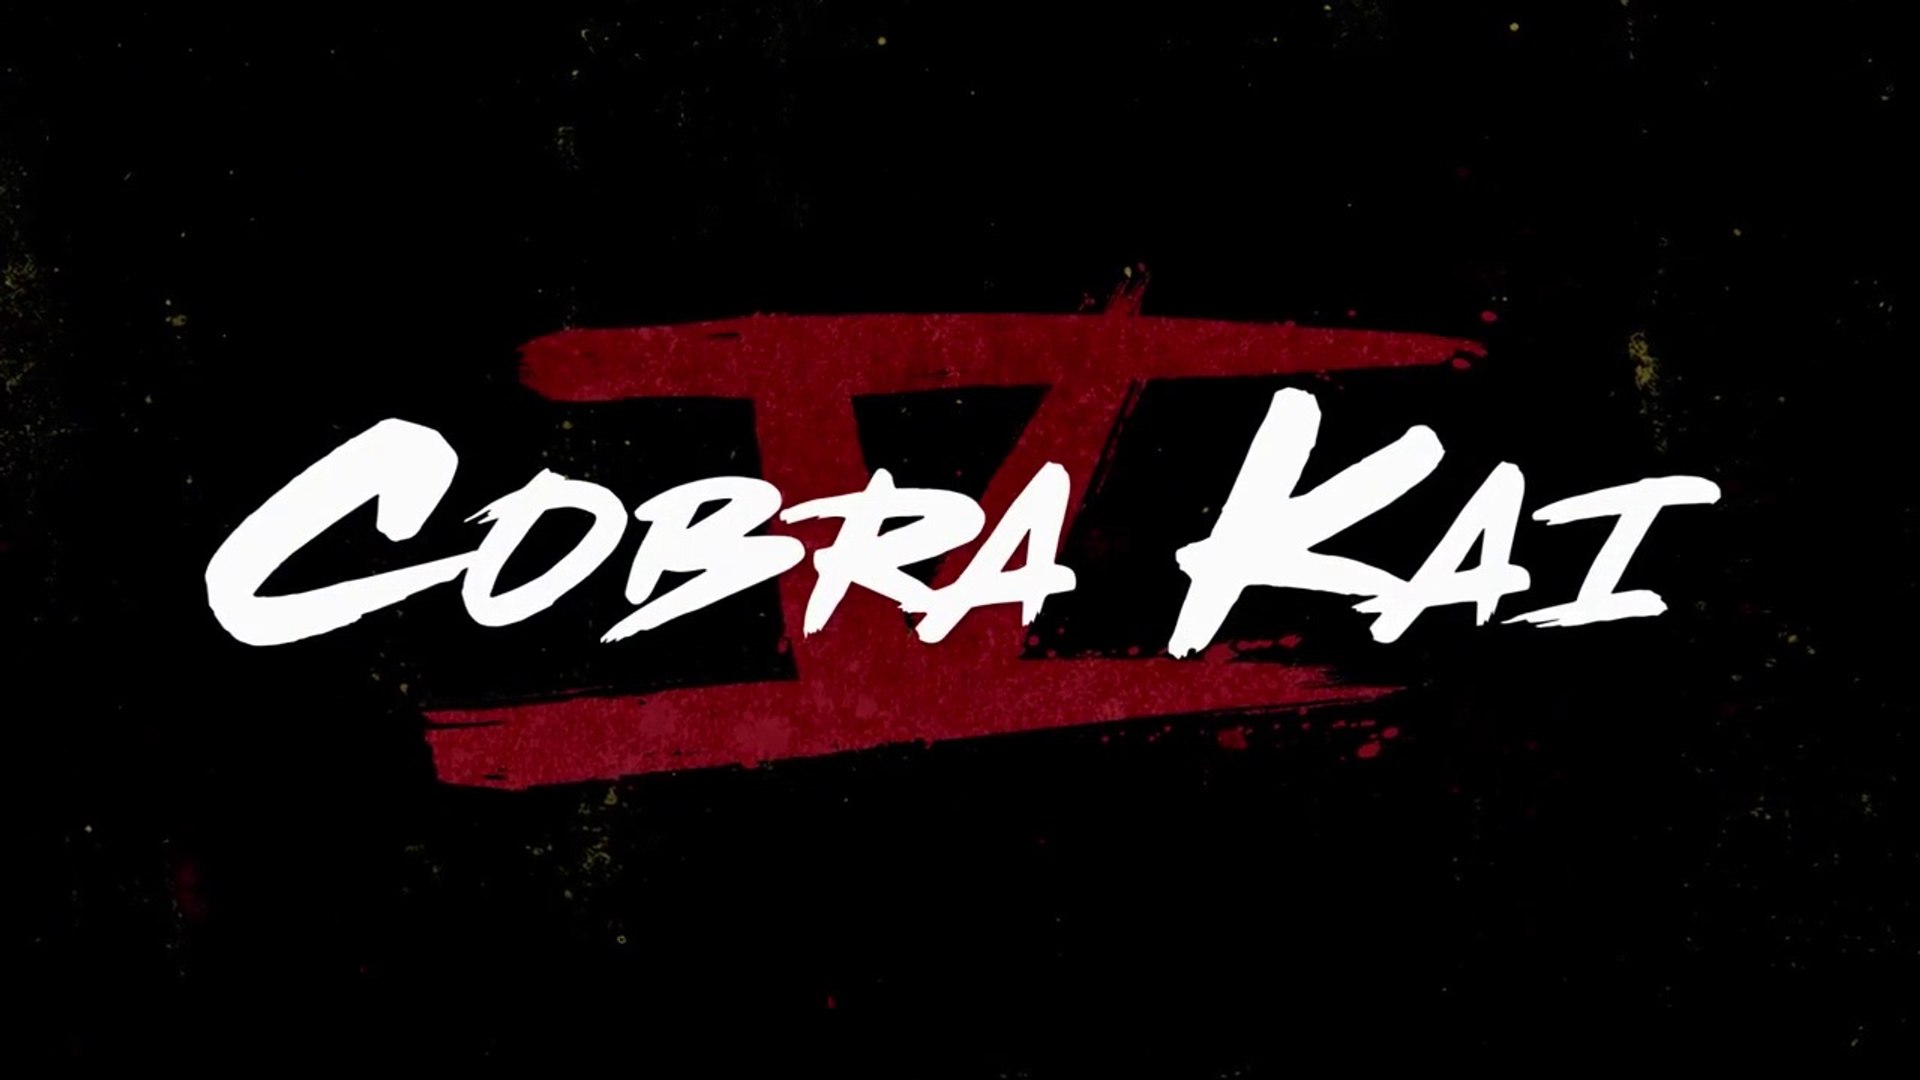 Cobra Kai sur Netflix : bande-annonce de la saison 5 - Vidéo Dailymotion